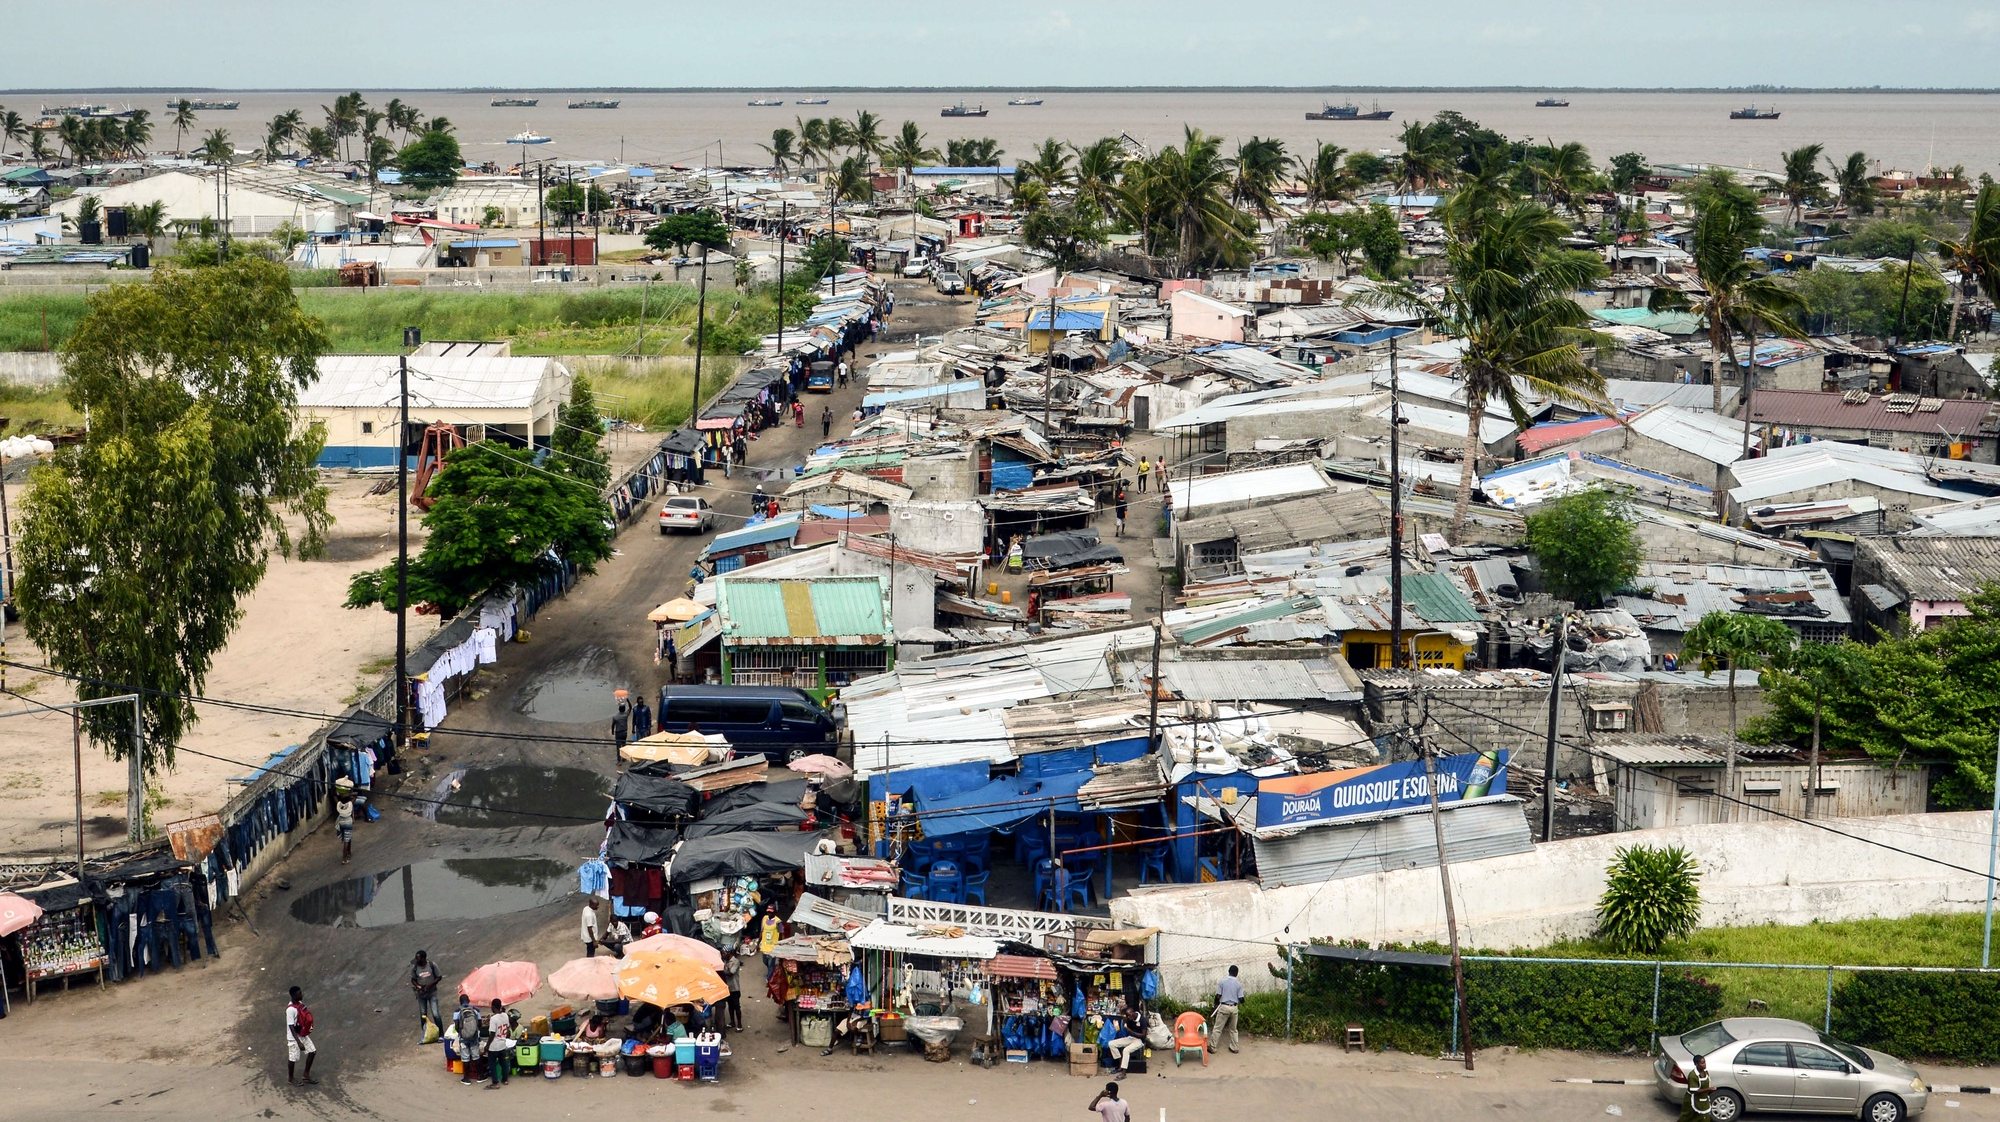 O bairro da Praia Nova um ano após os estragos do ciclone Idai em Moçambique, Beira, 28 de fevereiro de 2010. O ciclone Idai atingiu o cento de Moçambique em março de 2019, provocou 603 mortos e a cidade da Beira, uma das principais do país, foi severamente afetada. (ACOMPANHA TEXTO DE 11/03/2020)  ANTÓNIO SILVA/LUSA